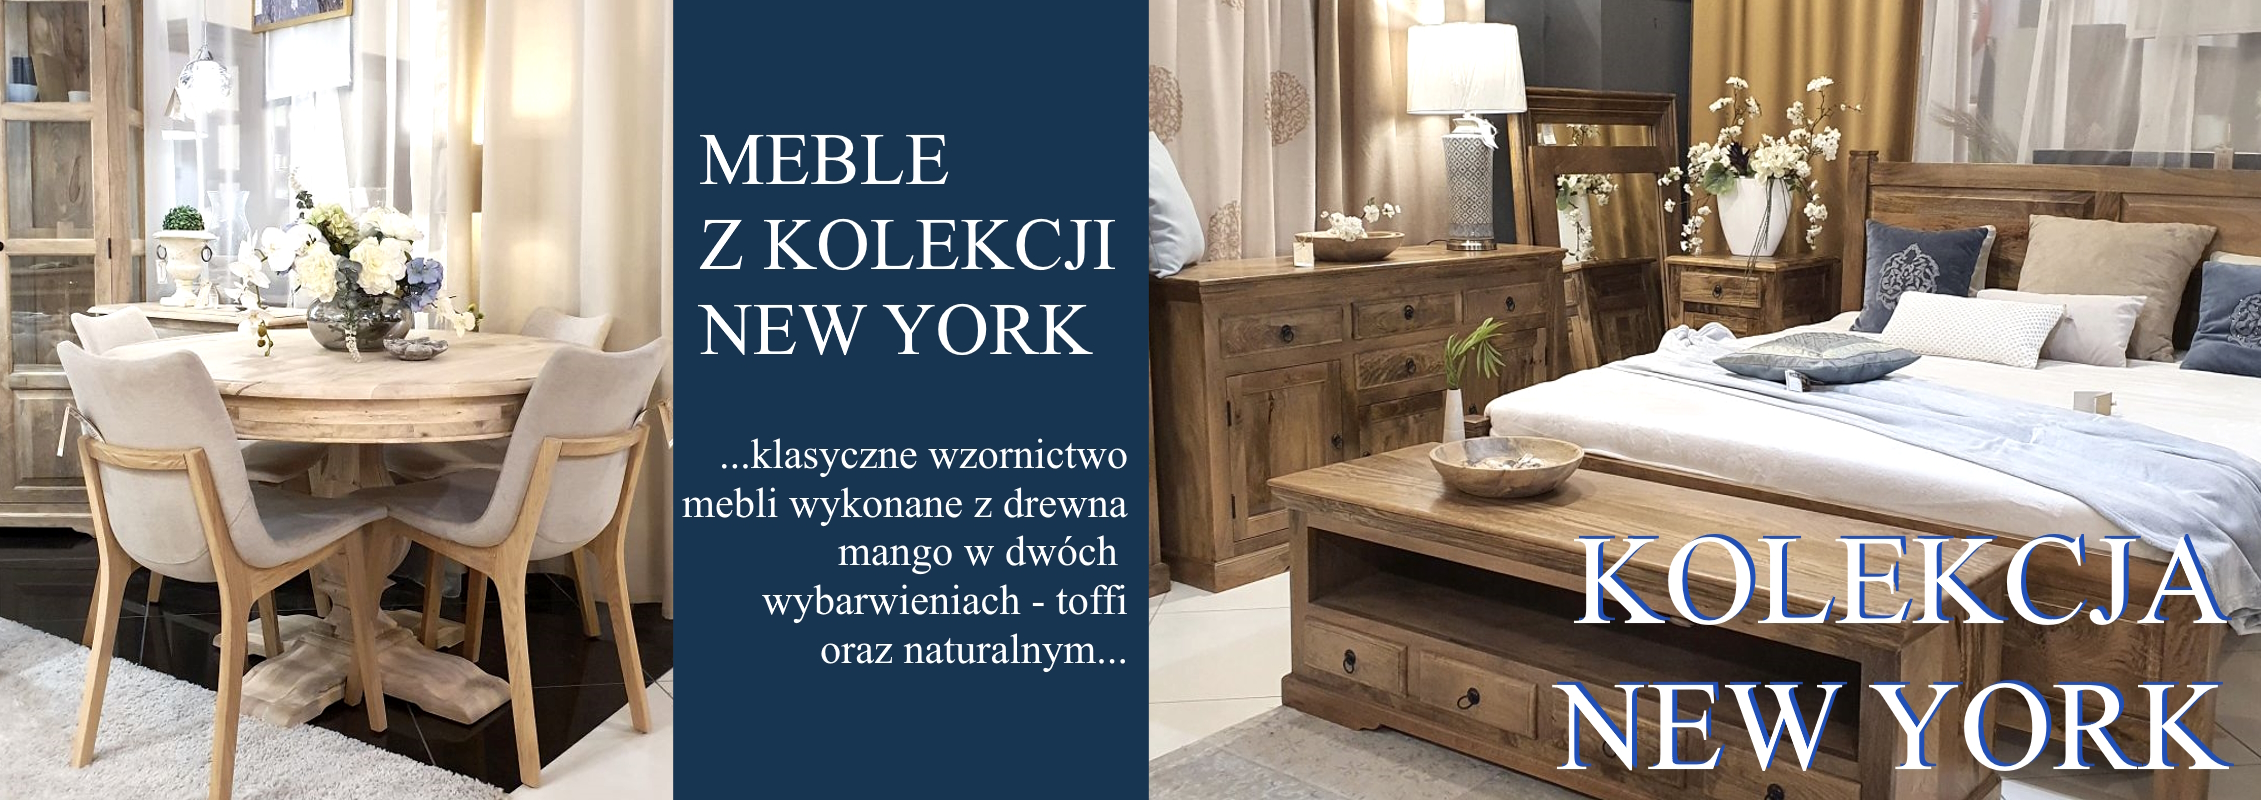 Kolekcja NEW YORK - klasyczne meble w kolorze naturalnym i toffi